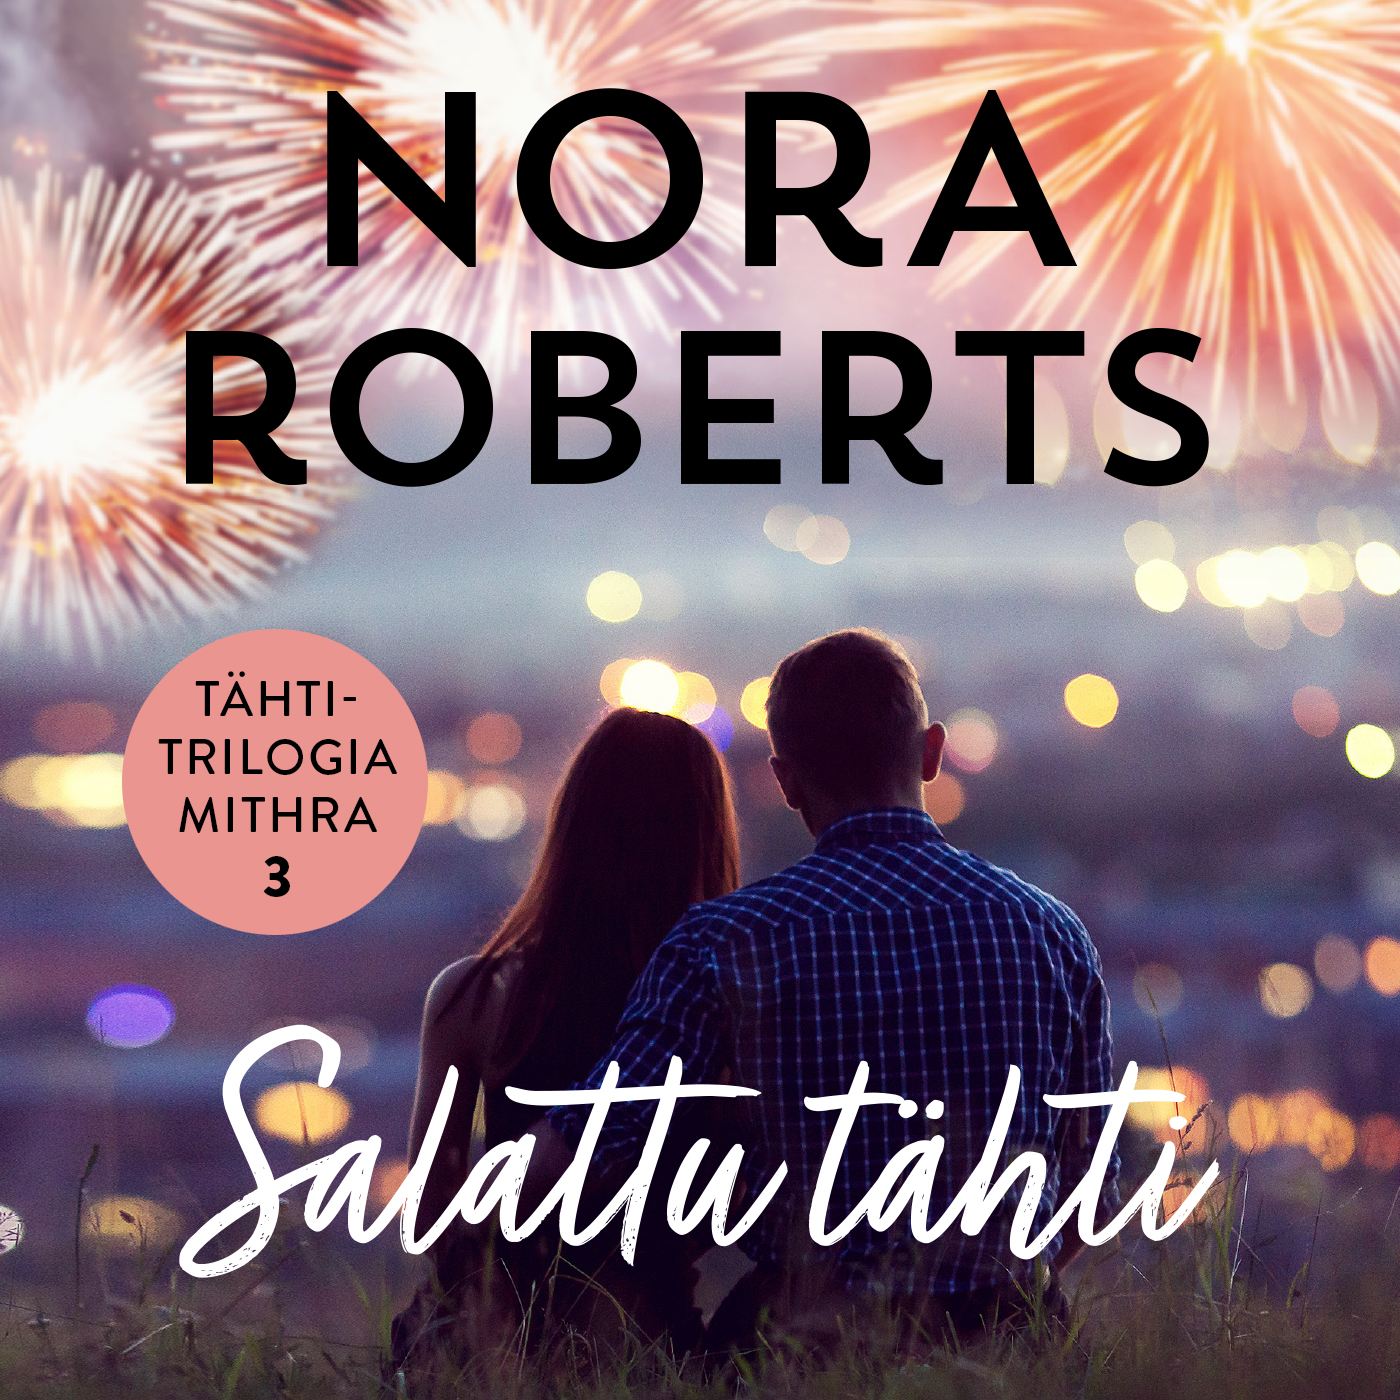 Roberts, Nora - Salattu tähti, äänikirja